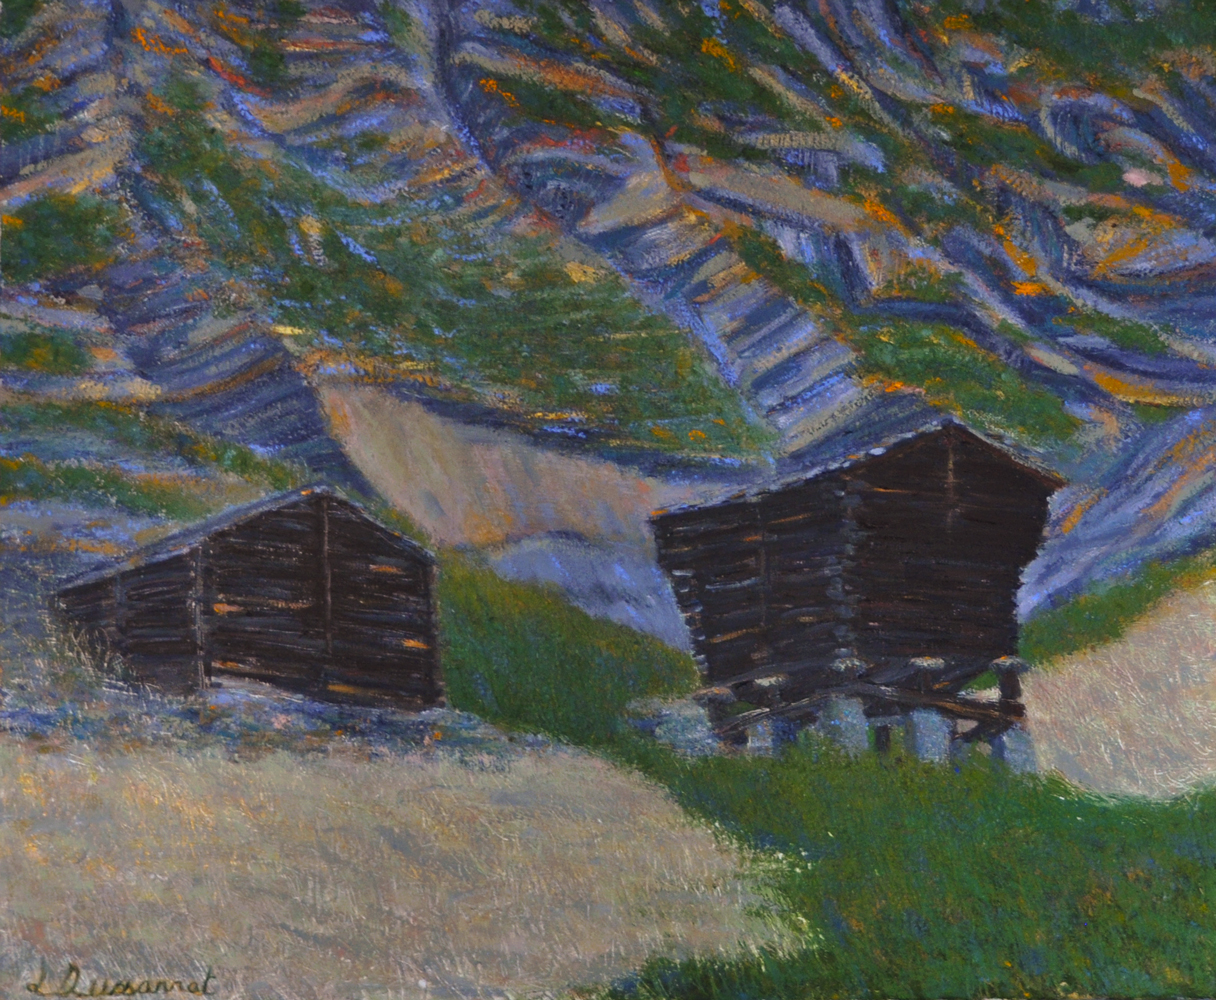 Mazots, Zmutt. Oil on canvas, 60x72